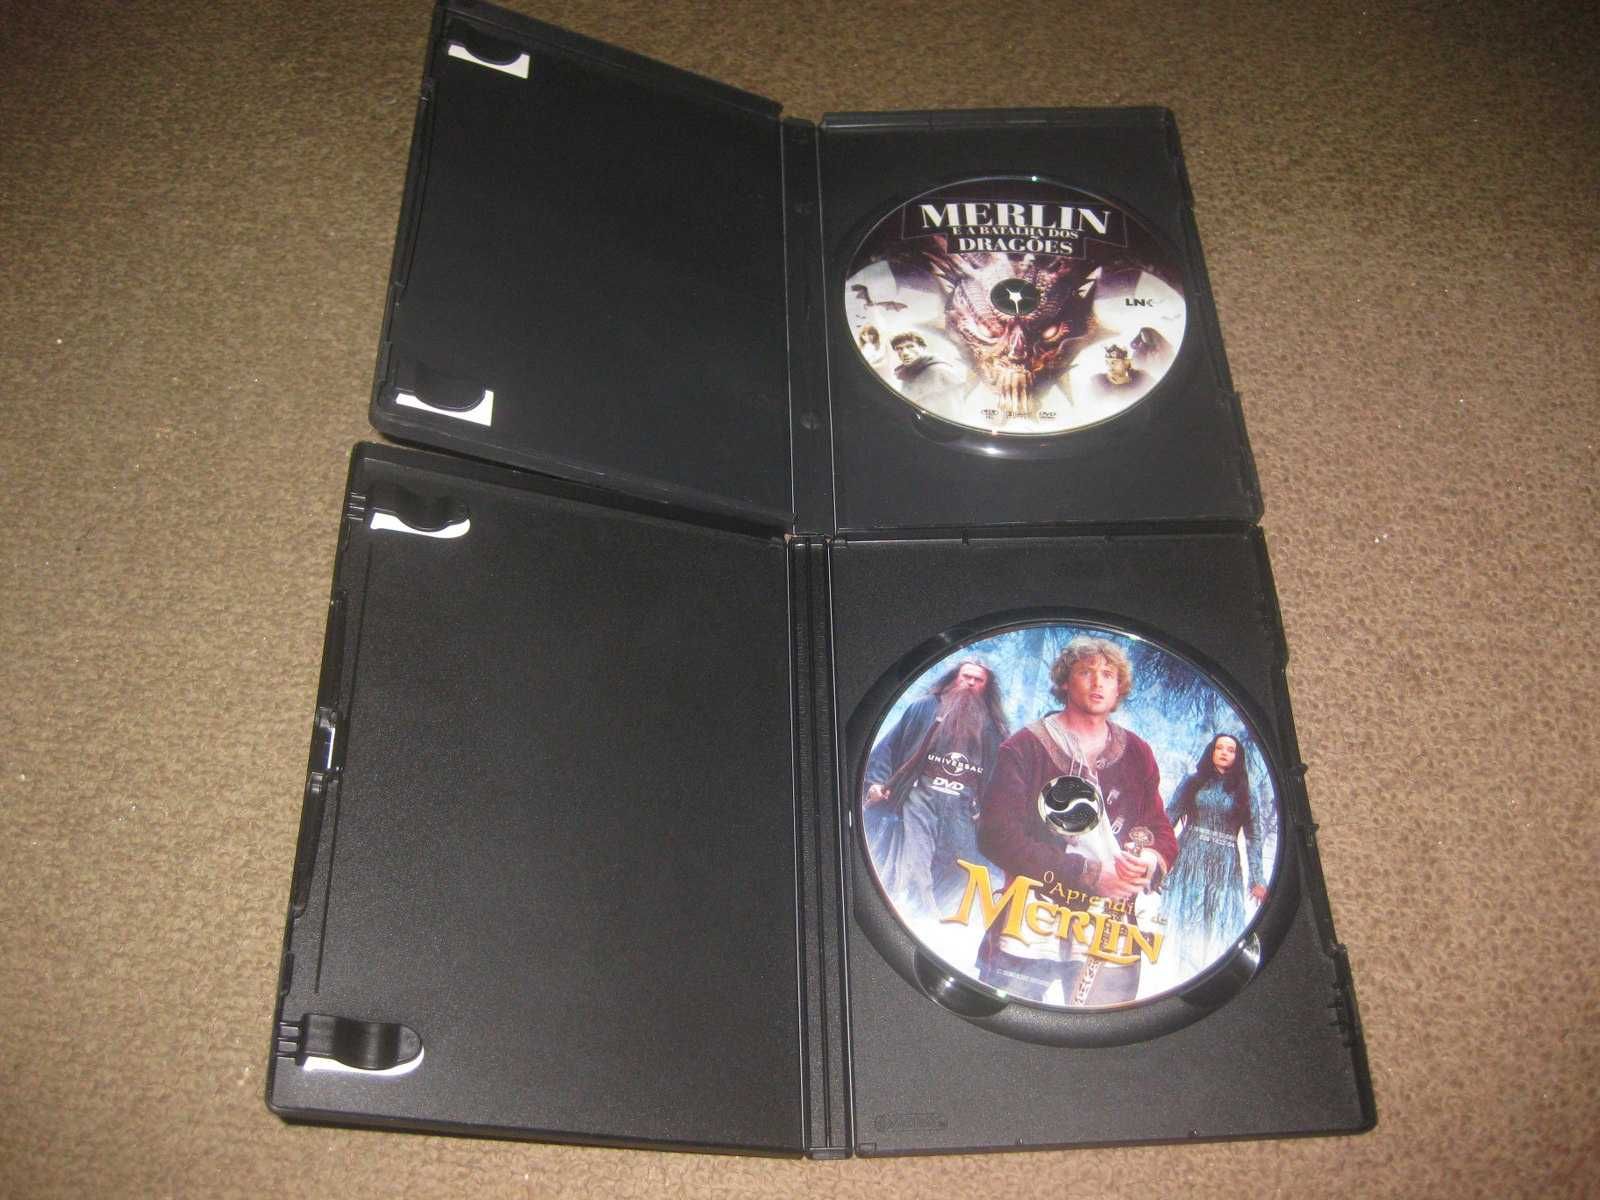 2 Filmes em DVD "Merlin"